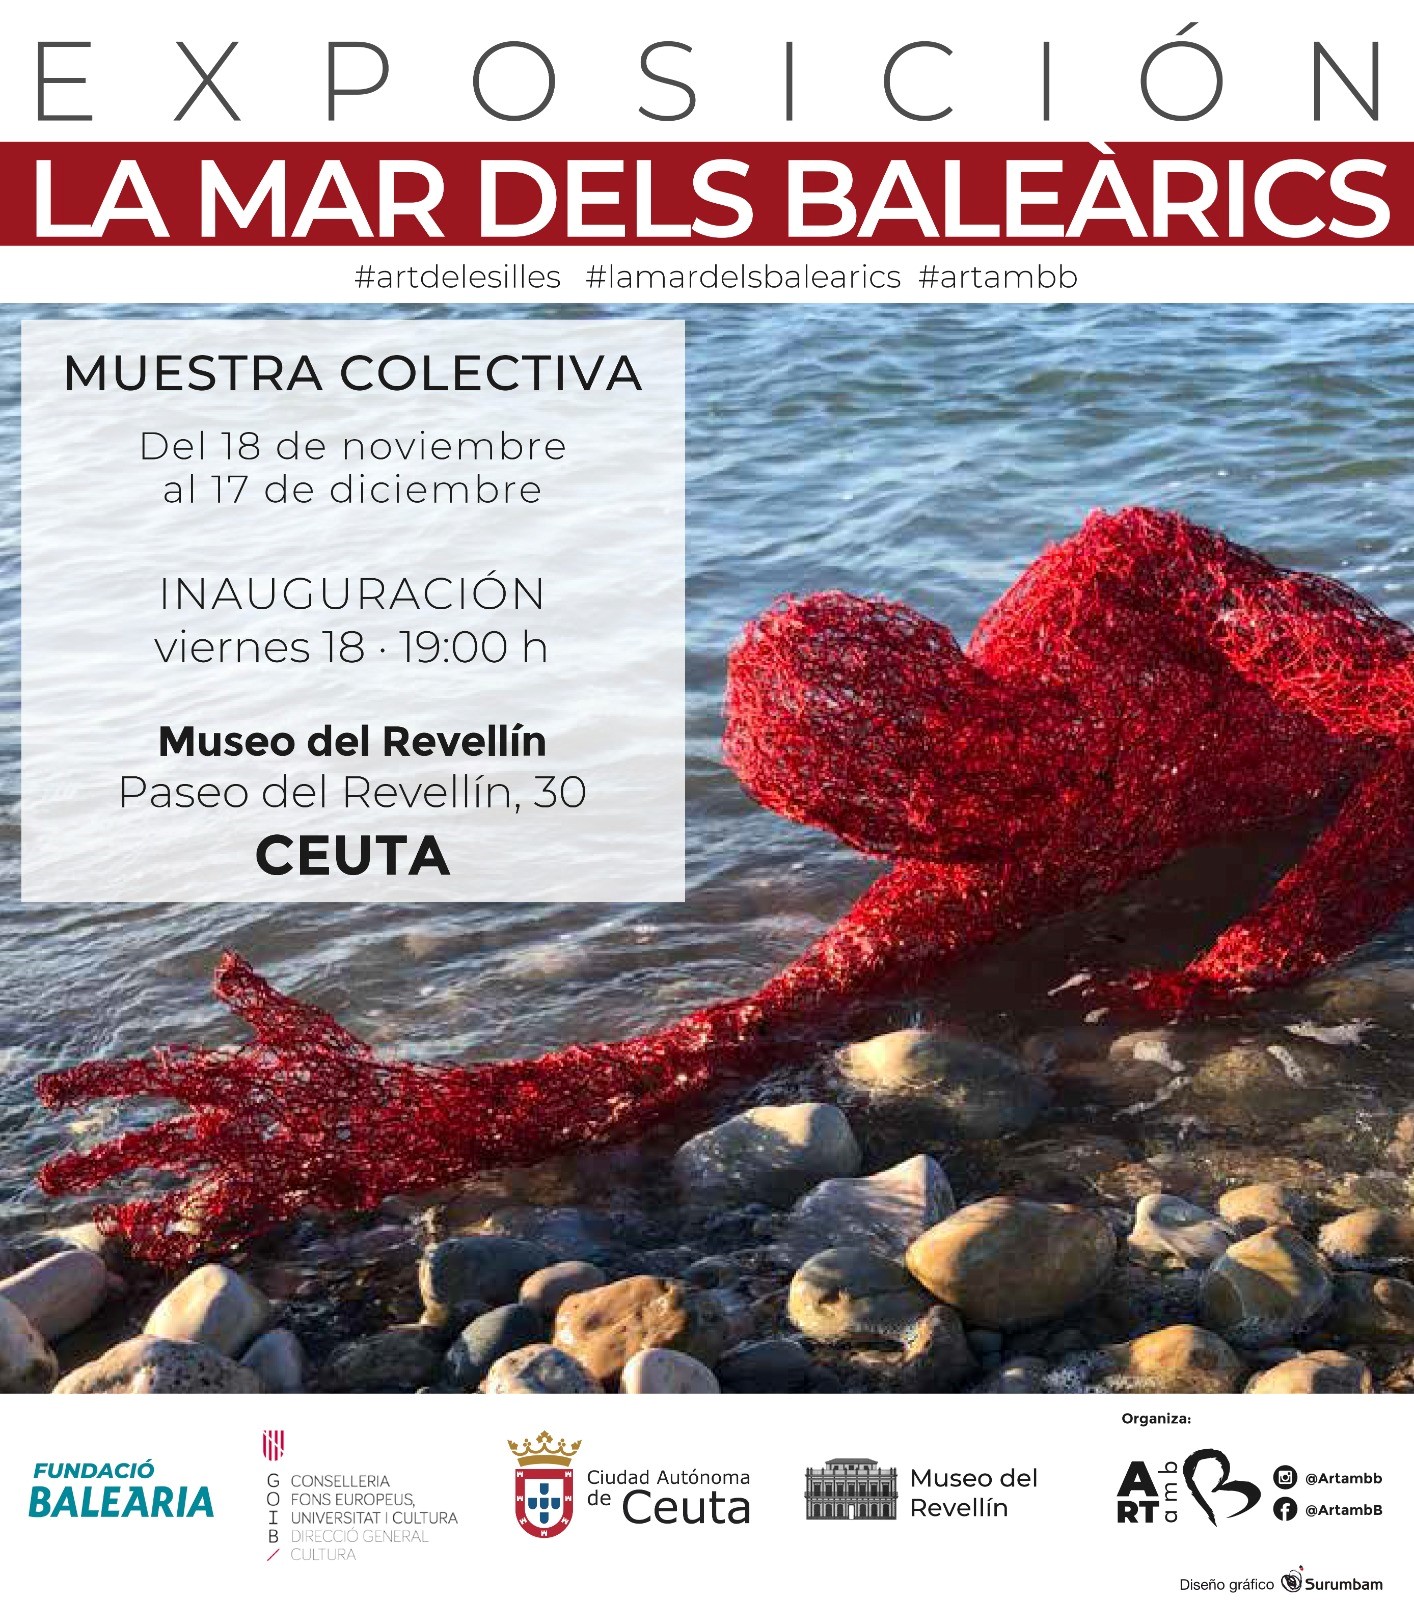 La Fundación Baleària inaugura la exposición ‘La mar dels Baleàrics’ en el Museo del Revellín de Ceuta